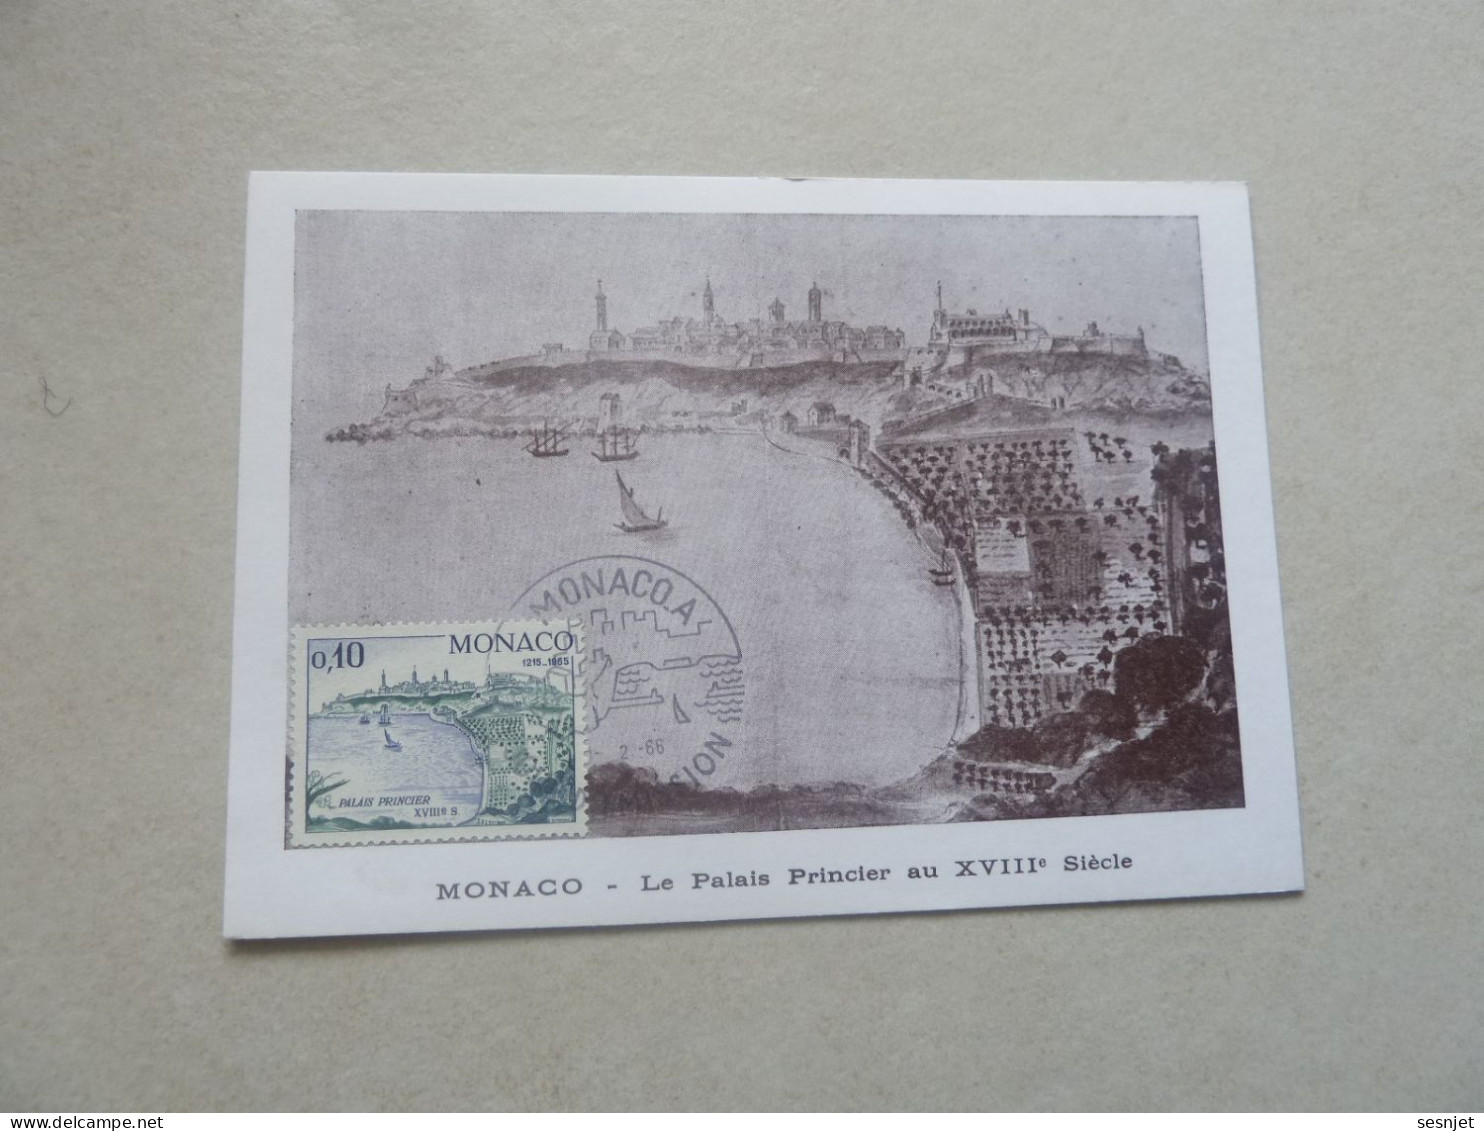 Monaco - Le Palais Au 18ème Siècle - 12c. - Yt 677 - Carte Premier Jour D'Emission - Année 1966 - - Cartes-Maximum (CM)